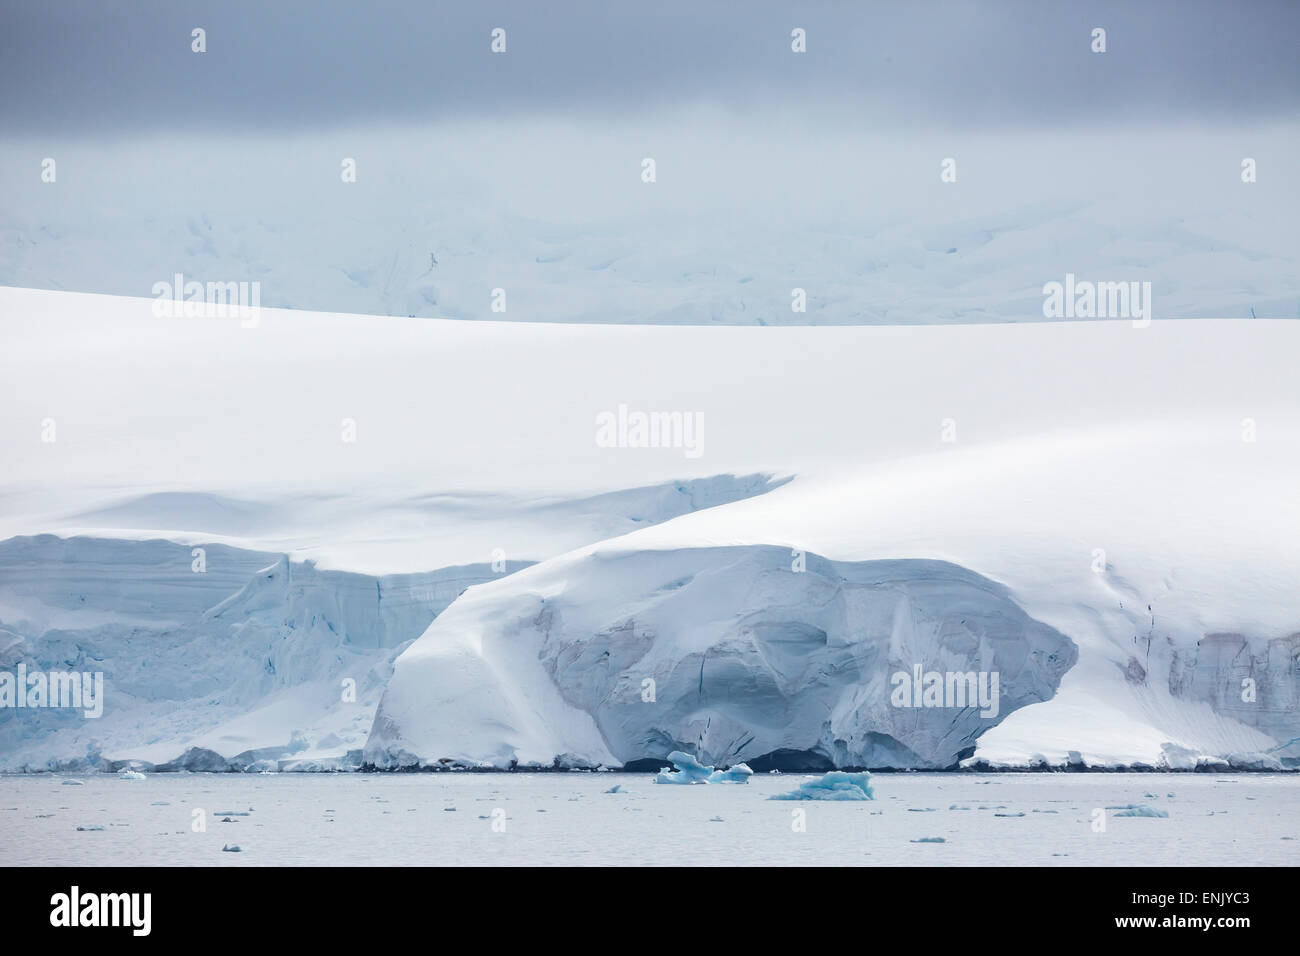 Montagne coperte di neve e ghiacciai in Dallmann Bay, Antartide, regioni polari Foto Stock